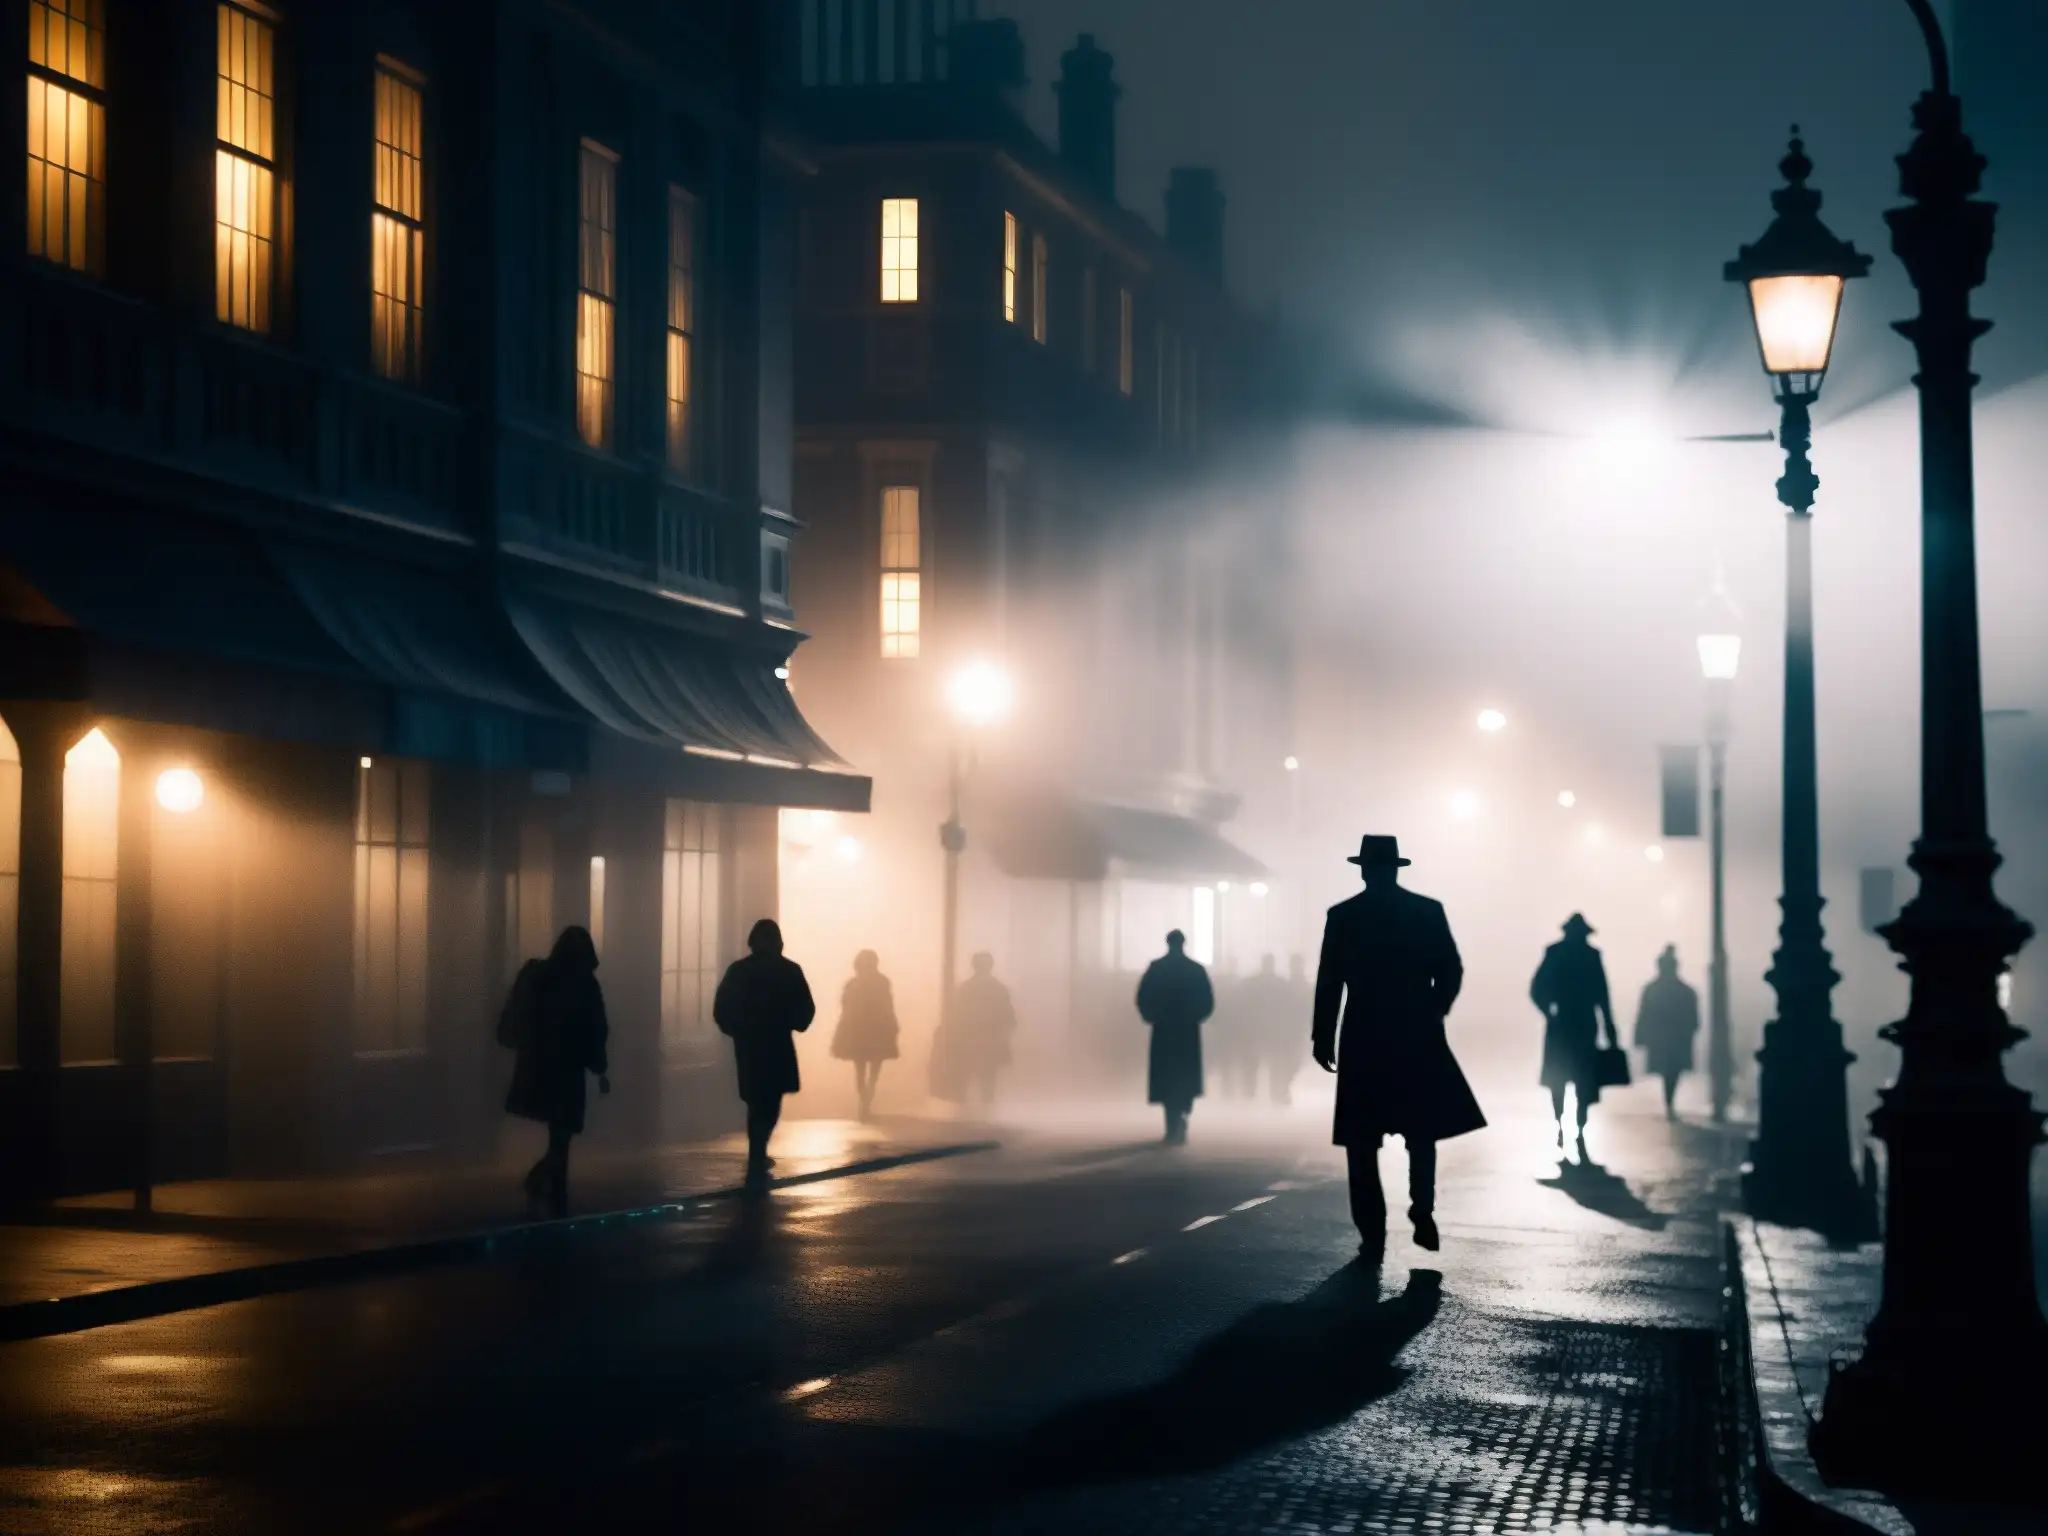 Una calle oscura y misteriosa de la ciudad de noche, con la niebla alrededor de una farola parpadeante